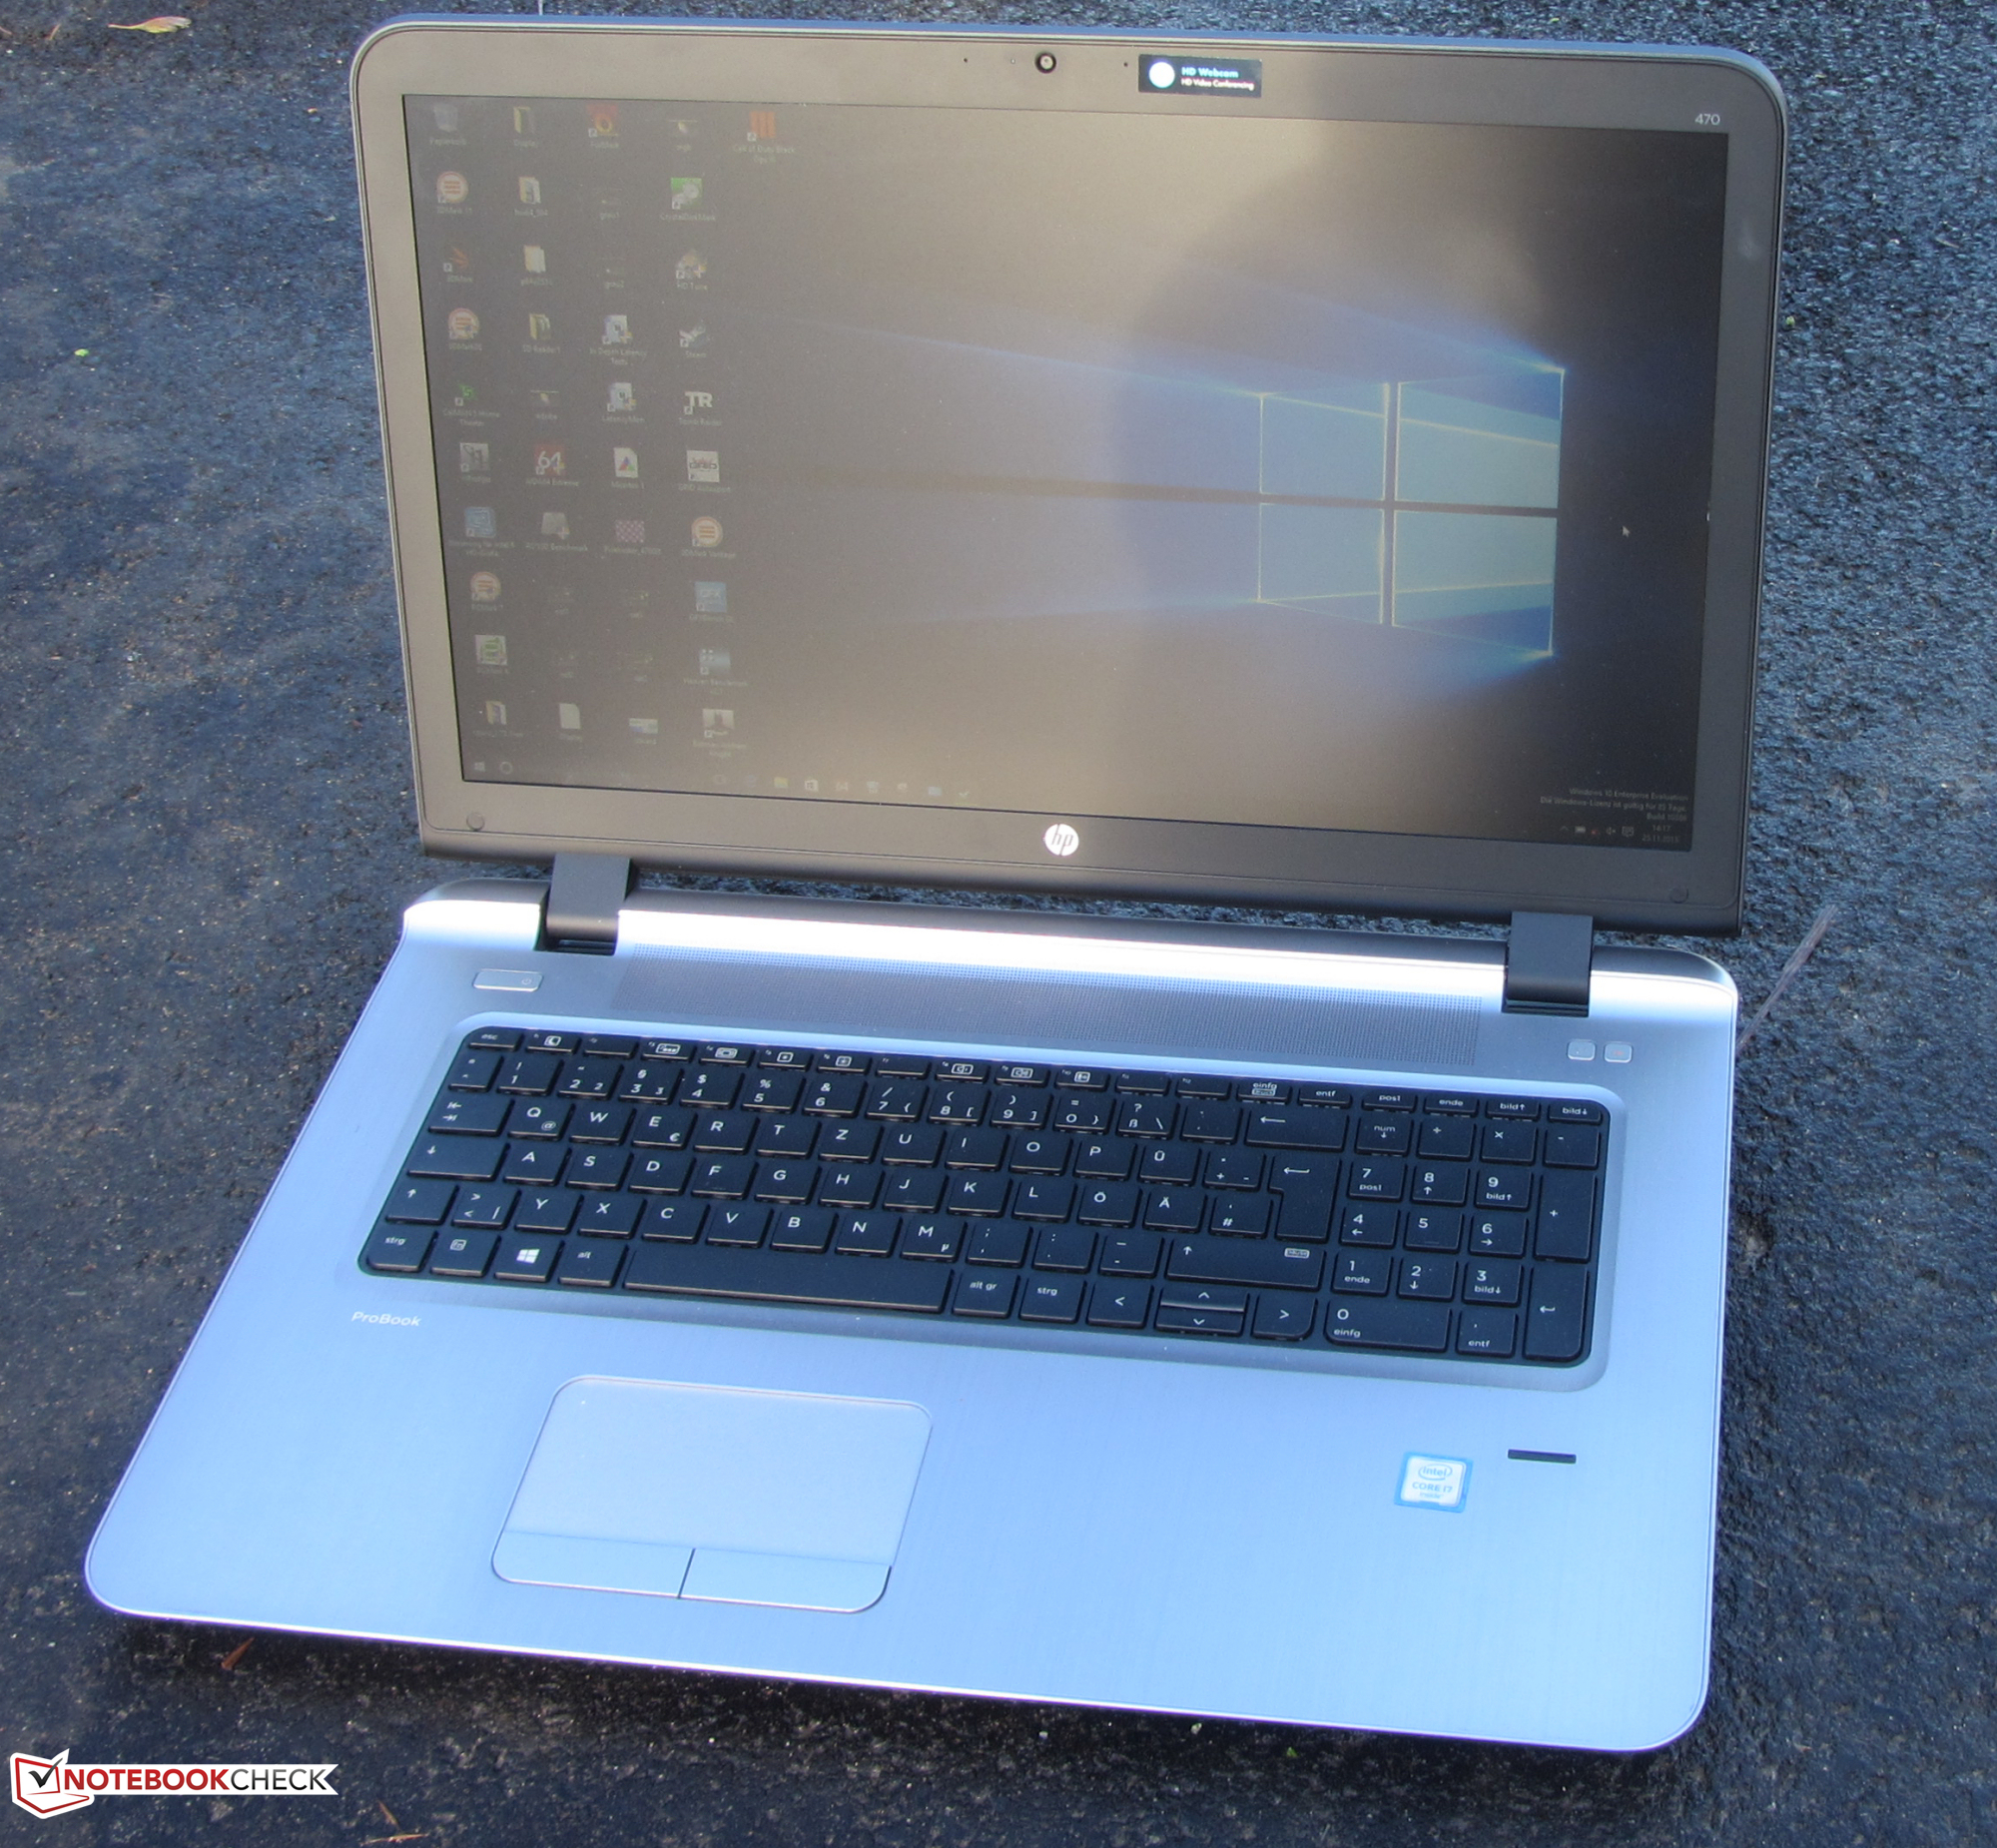 【大画面17.3インチノート】 【スタイリッシュノート】 HP ProBook 470 G3 Notebook PC 第6世代 Core i7 6500U 8GB HDD500GB スーパーマルチ Windows10 64bit WPSOffice 17.3インチ フルHD カメラ 無線LAN パソコン ノートパソコン PC Notebook